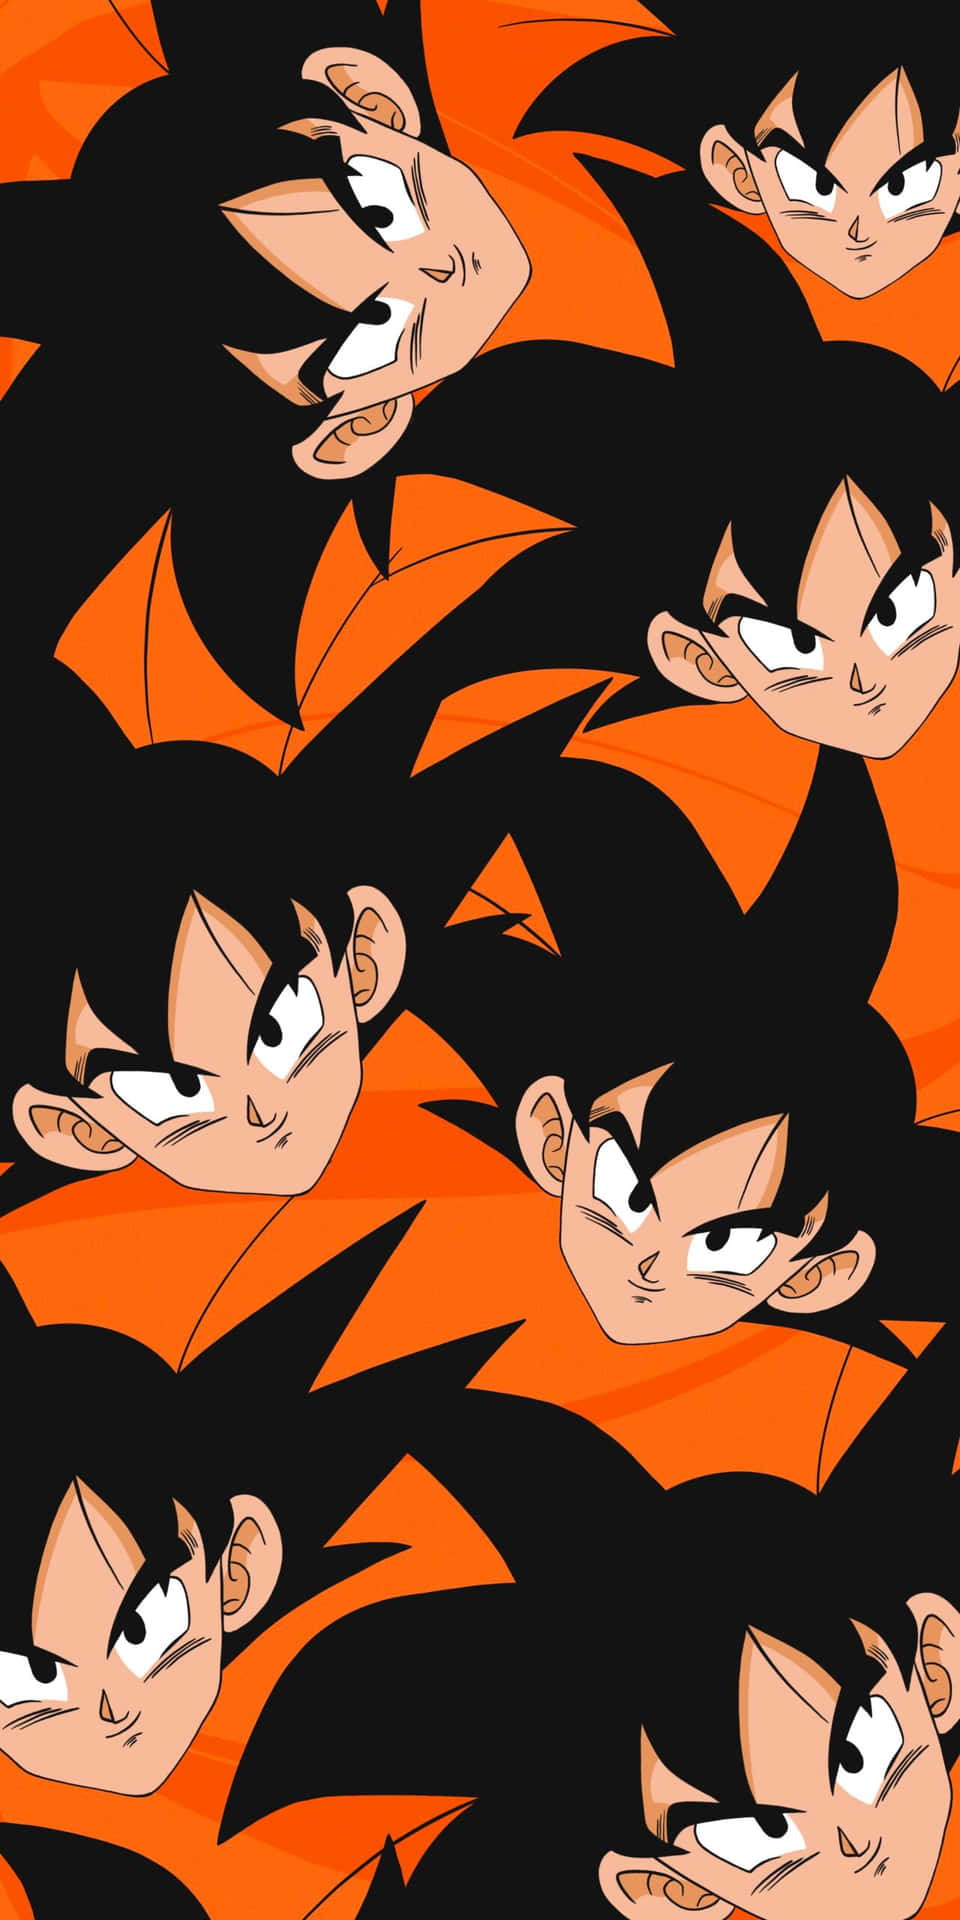 Imagende Goku De Dragon Ball Z En La Cara Del Ordenador O Del Móvil.